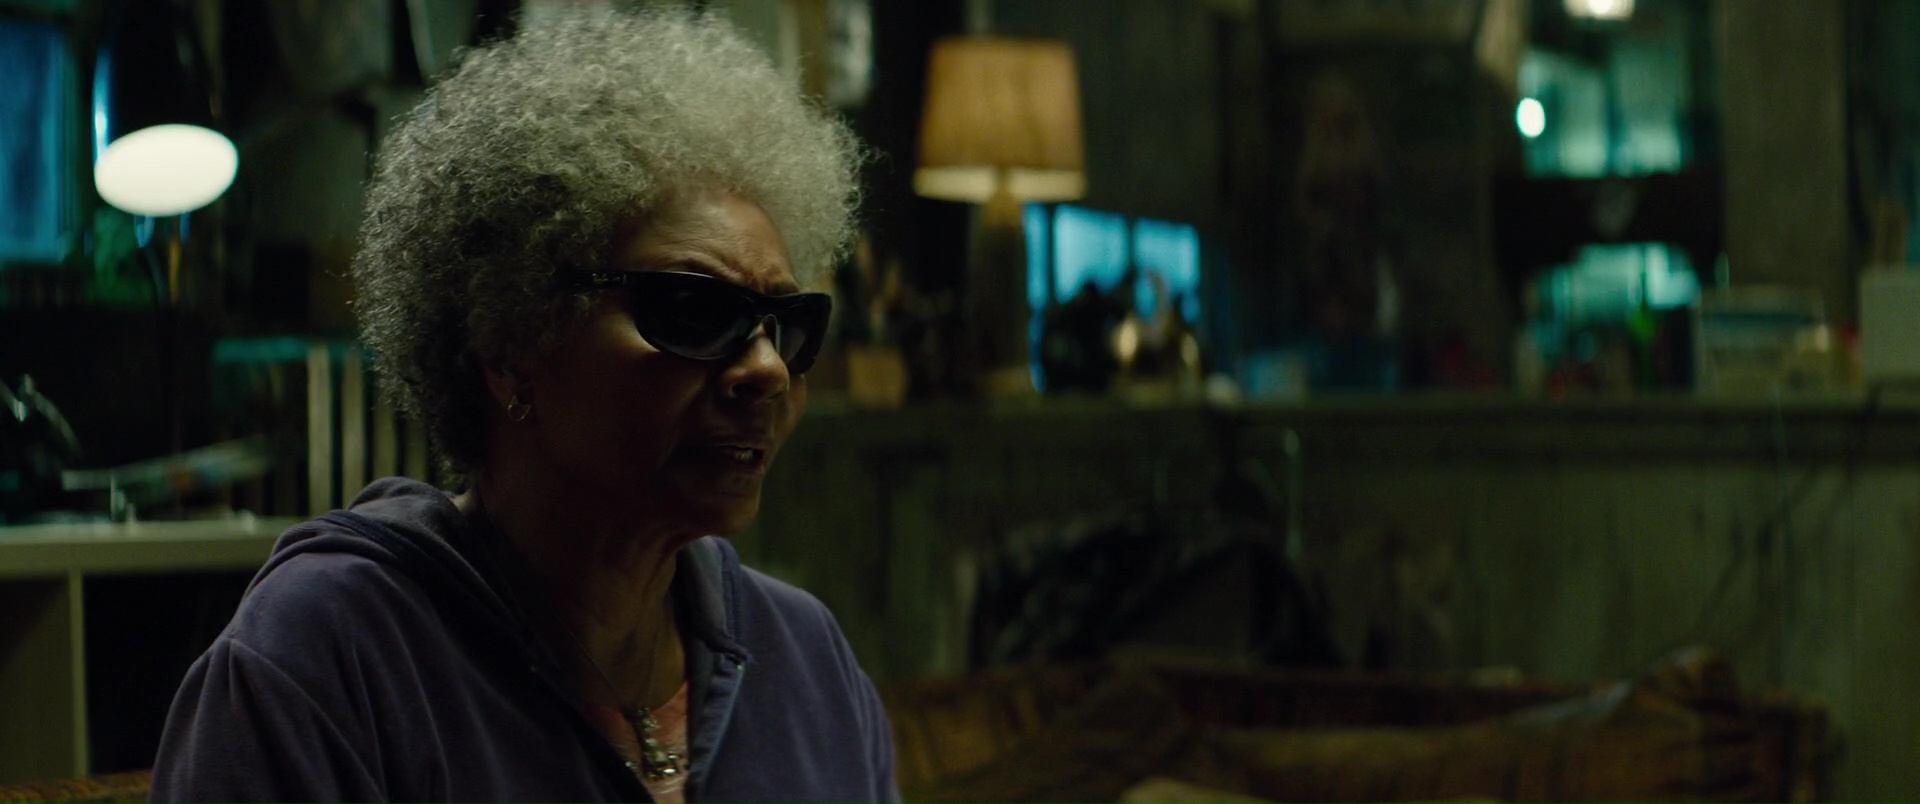 Ray-Ban Sunglasses Worn by Leslie Uggams (Blind Al) in Deadpool 2 (2018) Movie